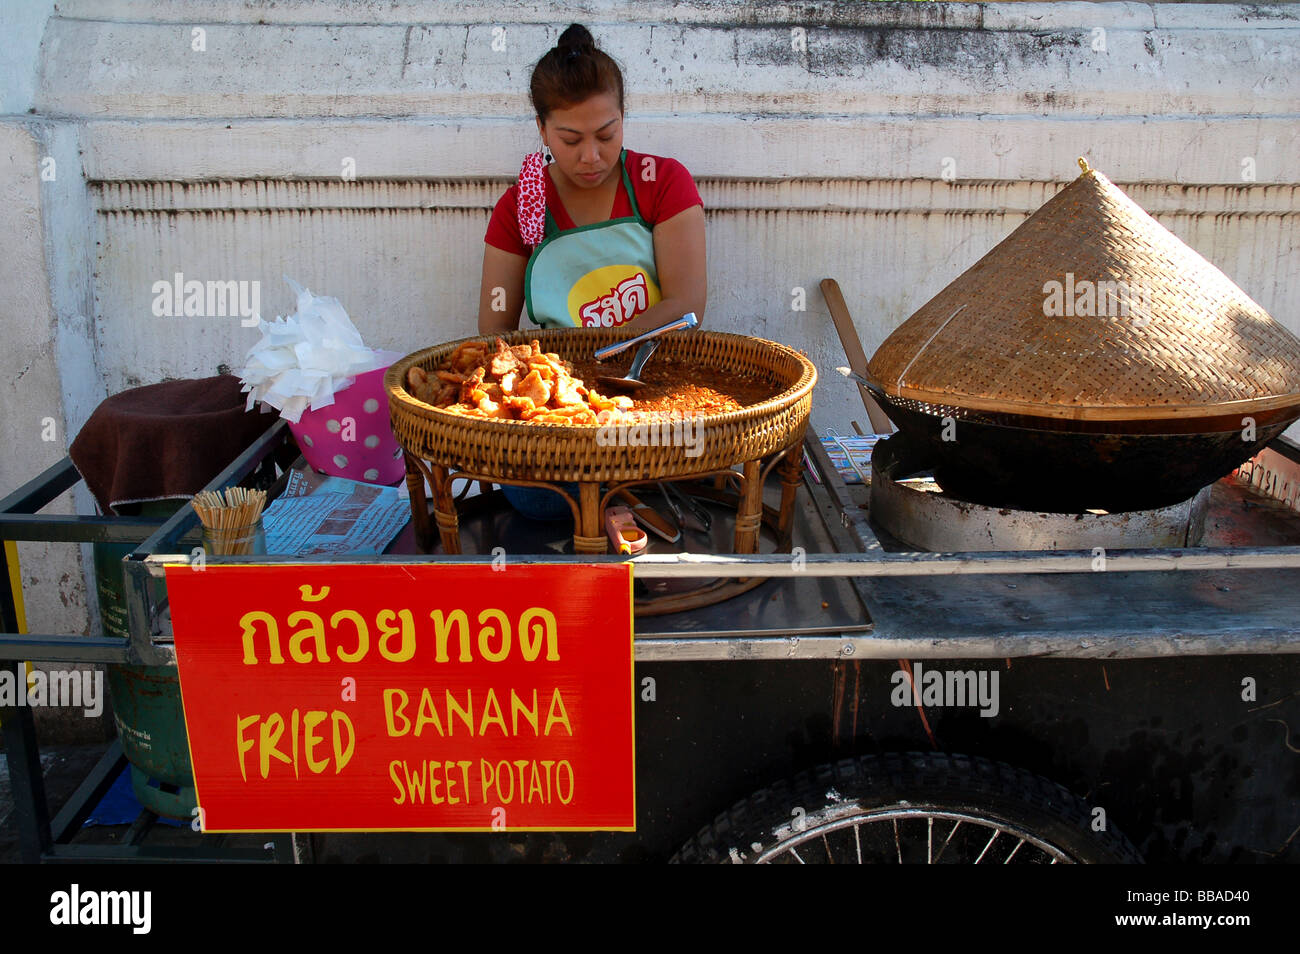 La vente de bananes frites dame thaï à Chiang Mai, Thaïlande Banque D'Images